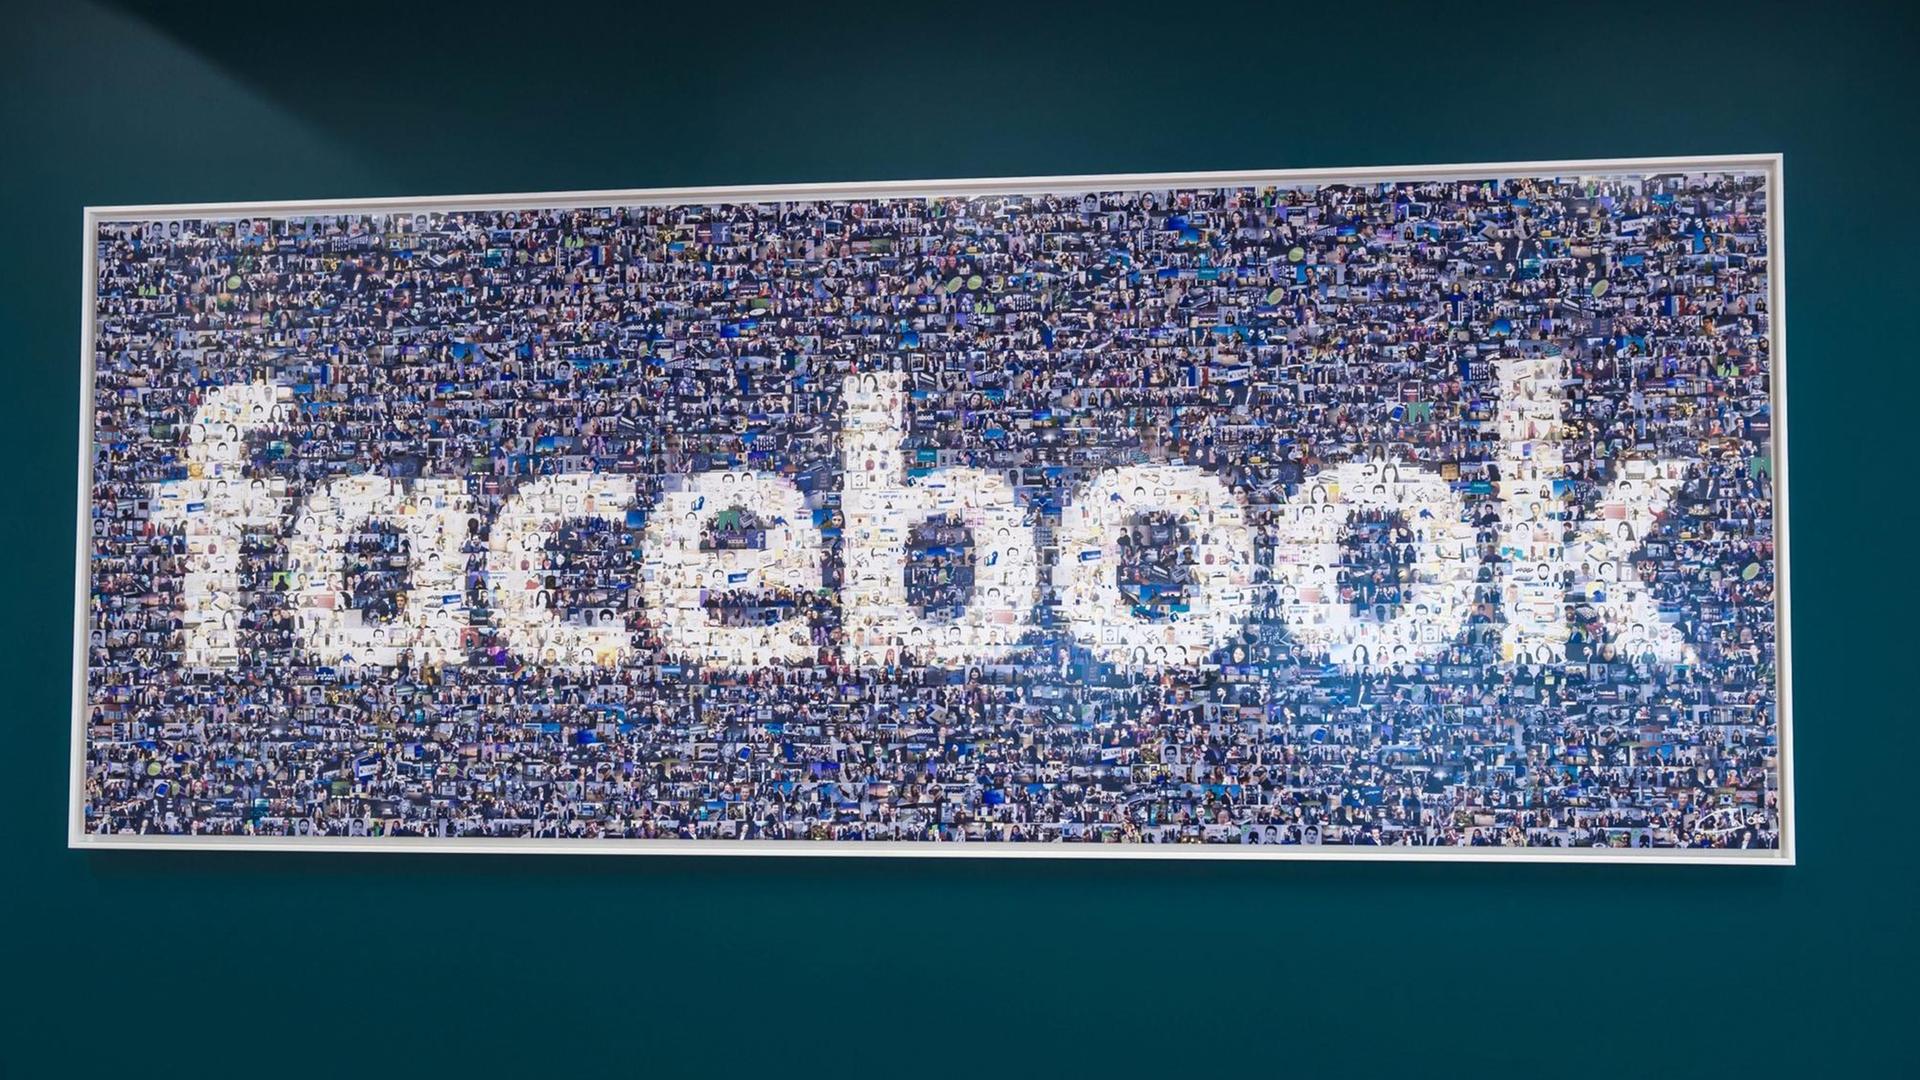 Facebook ist ein soziales Netzwerk. Jetzt wird es stark kritisiert. 